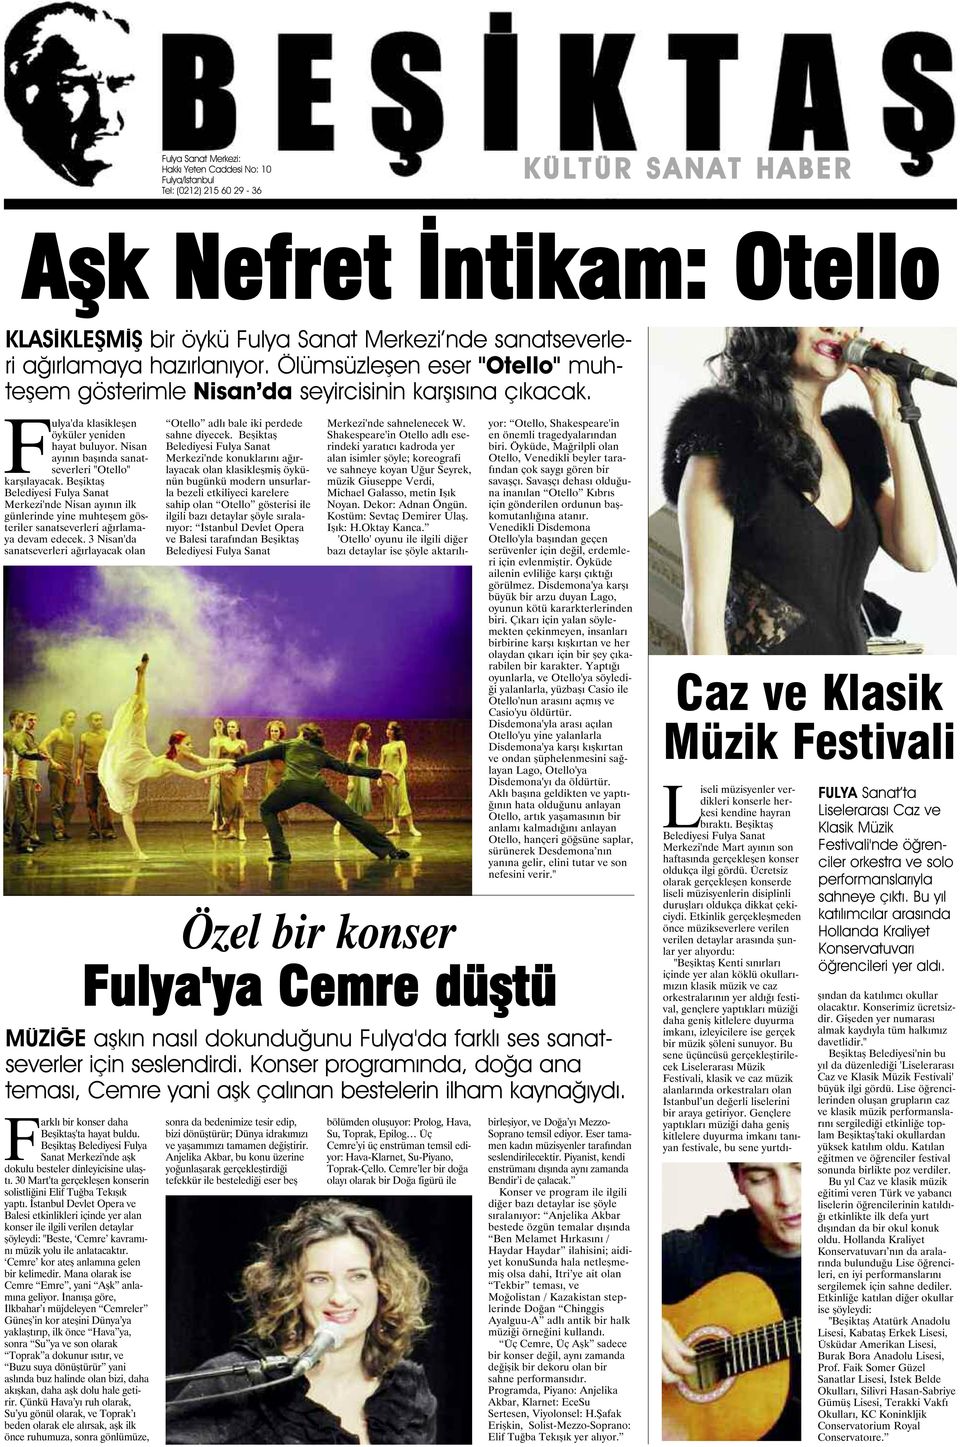 Nisan ayının başında sanatseverleri "Otello" karşılayacak. Beşiktaş Belediyesi Fulya Sanat Merkezi'nde Nisan ayının ilk günlerinde yine muhteşem gösteriler sanatseverleri ağırlamaya devam edecek.